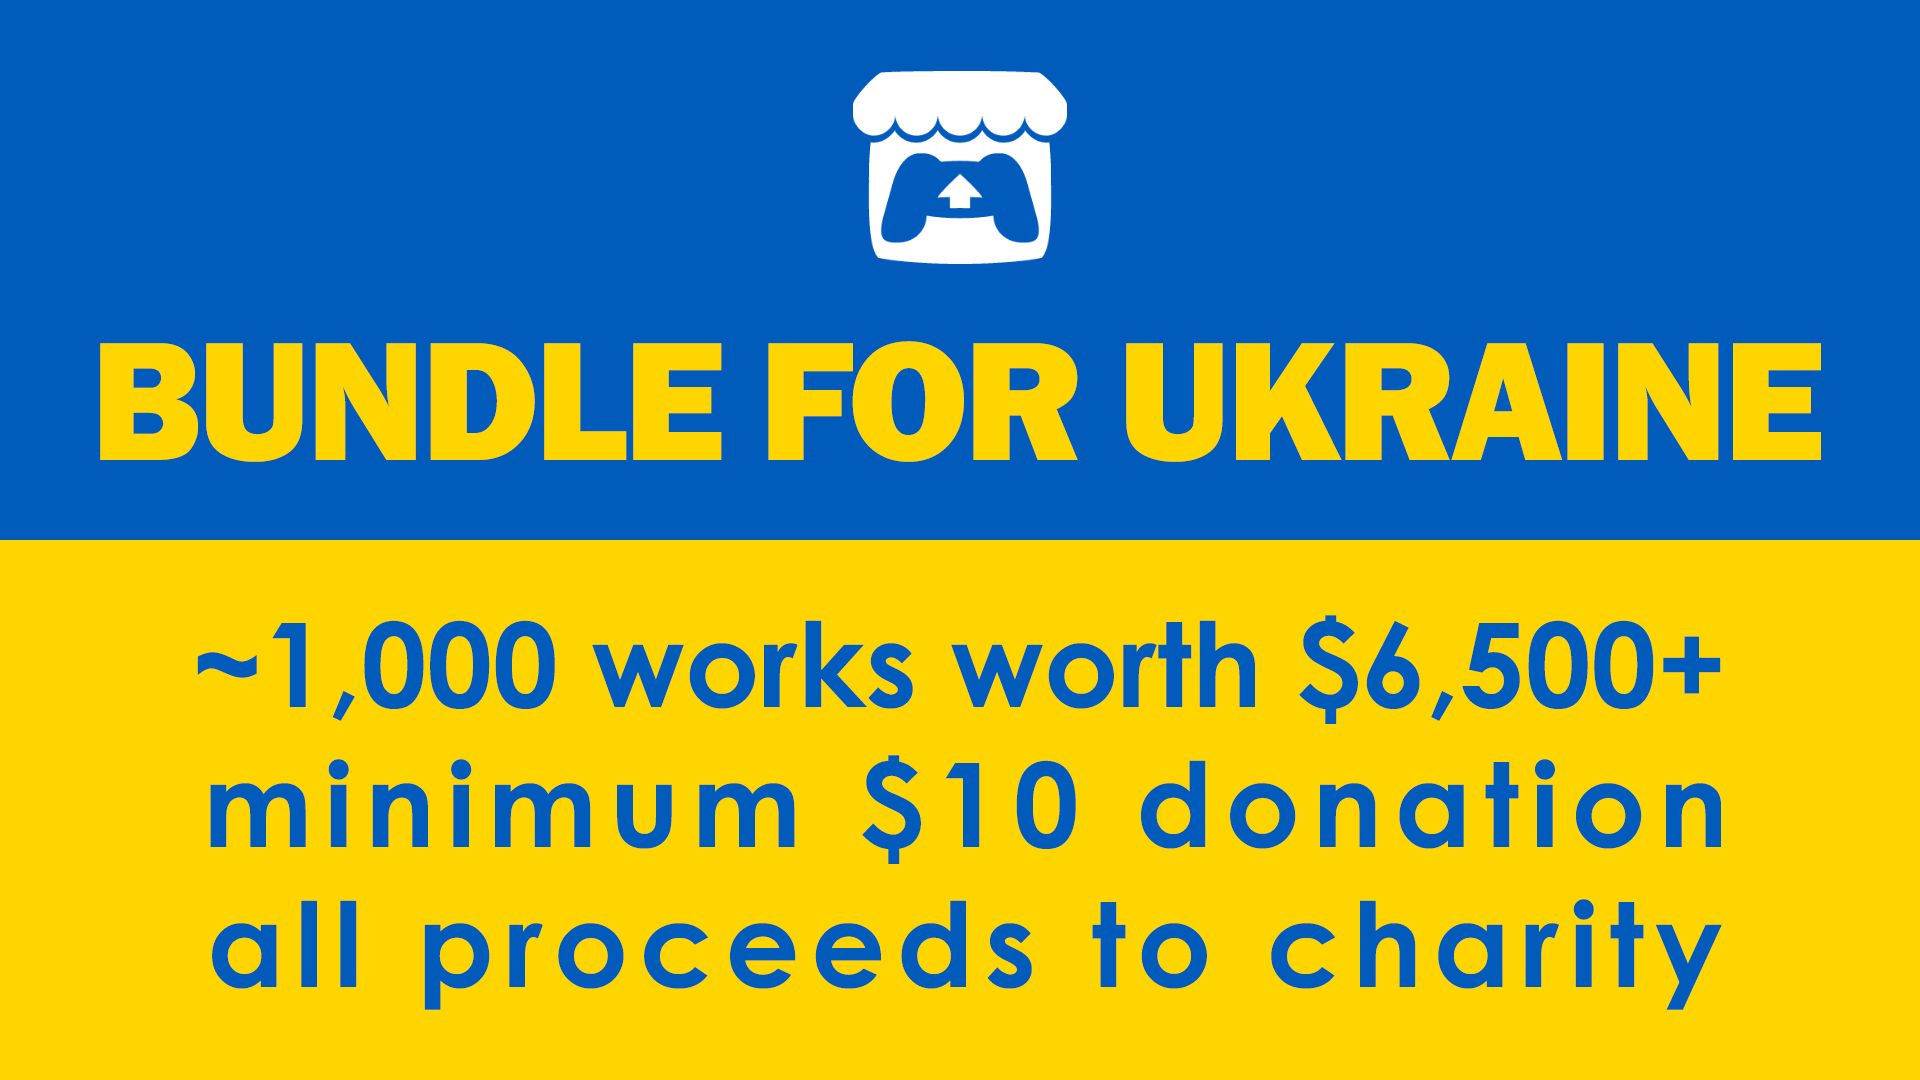 ادعم أوكرانيا بشراء 572 لعبة مستقلة مقابل 10 دولارات